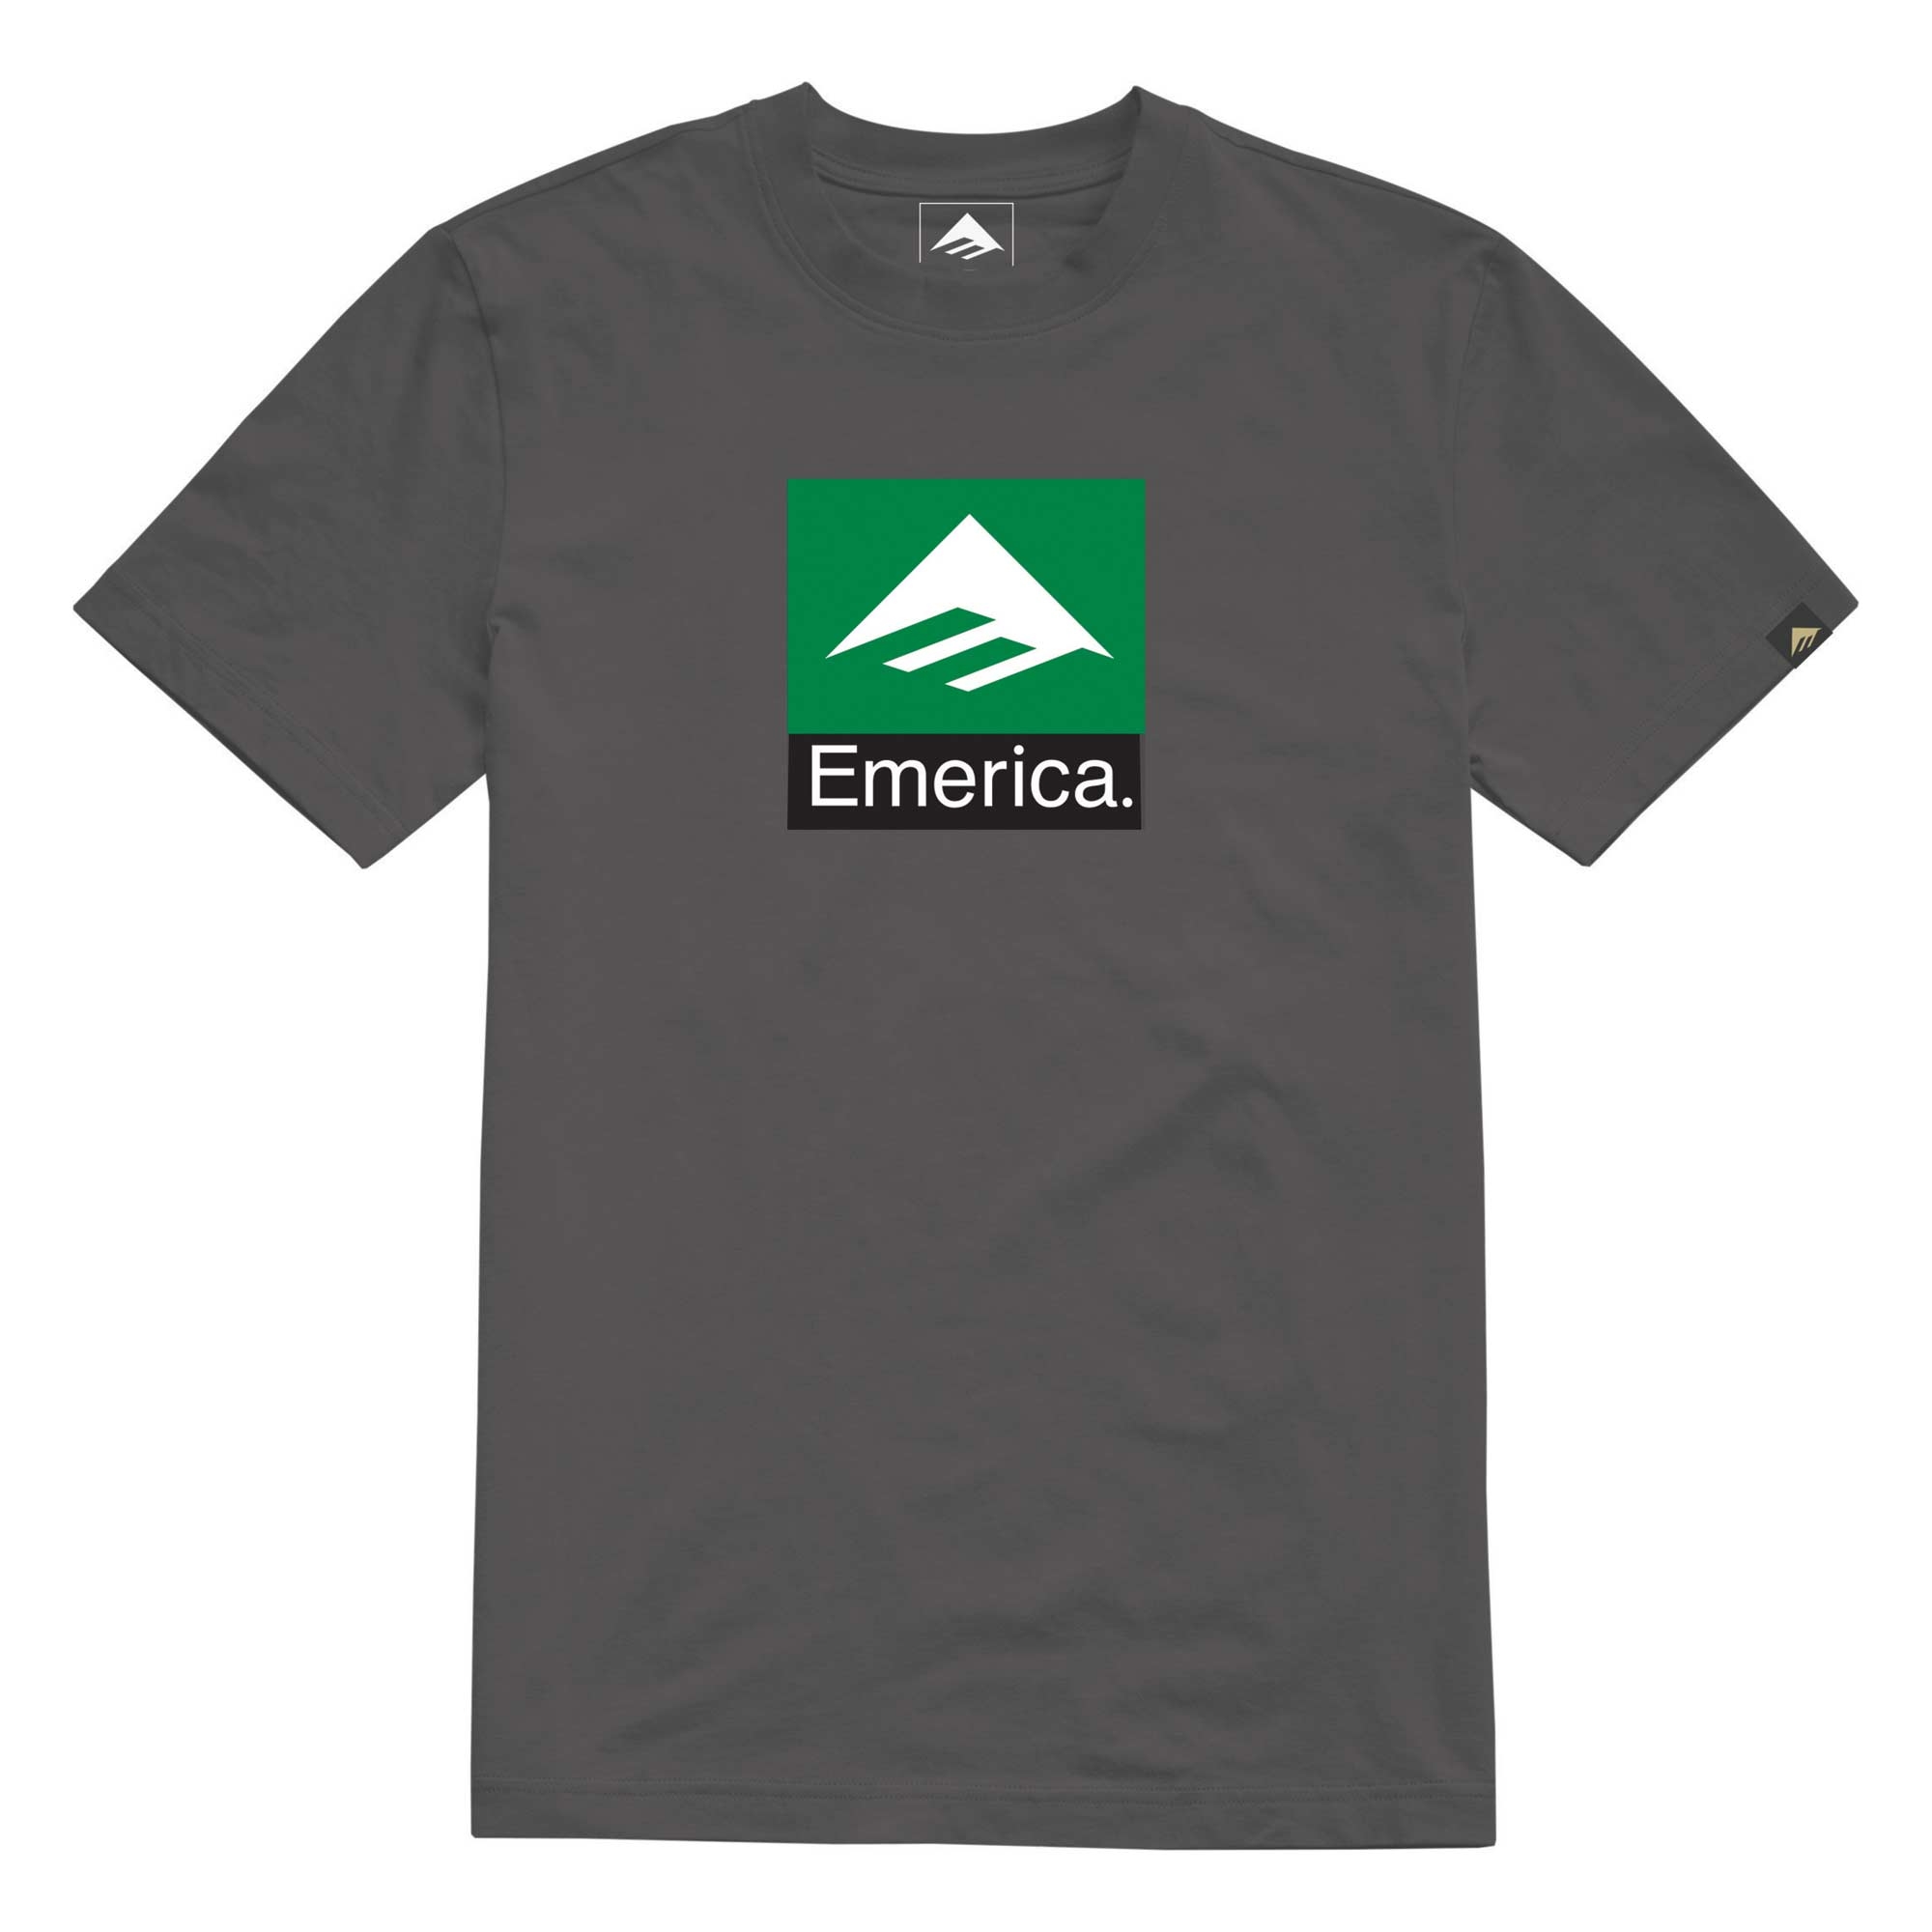 EMERICA T-Shirt CLASSIC COMBO charcoal